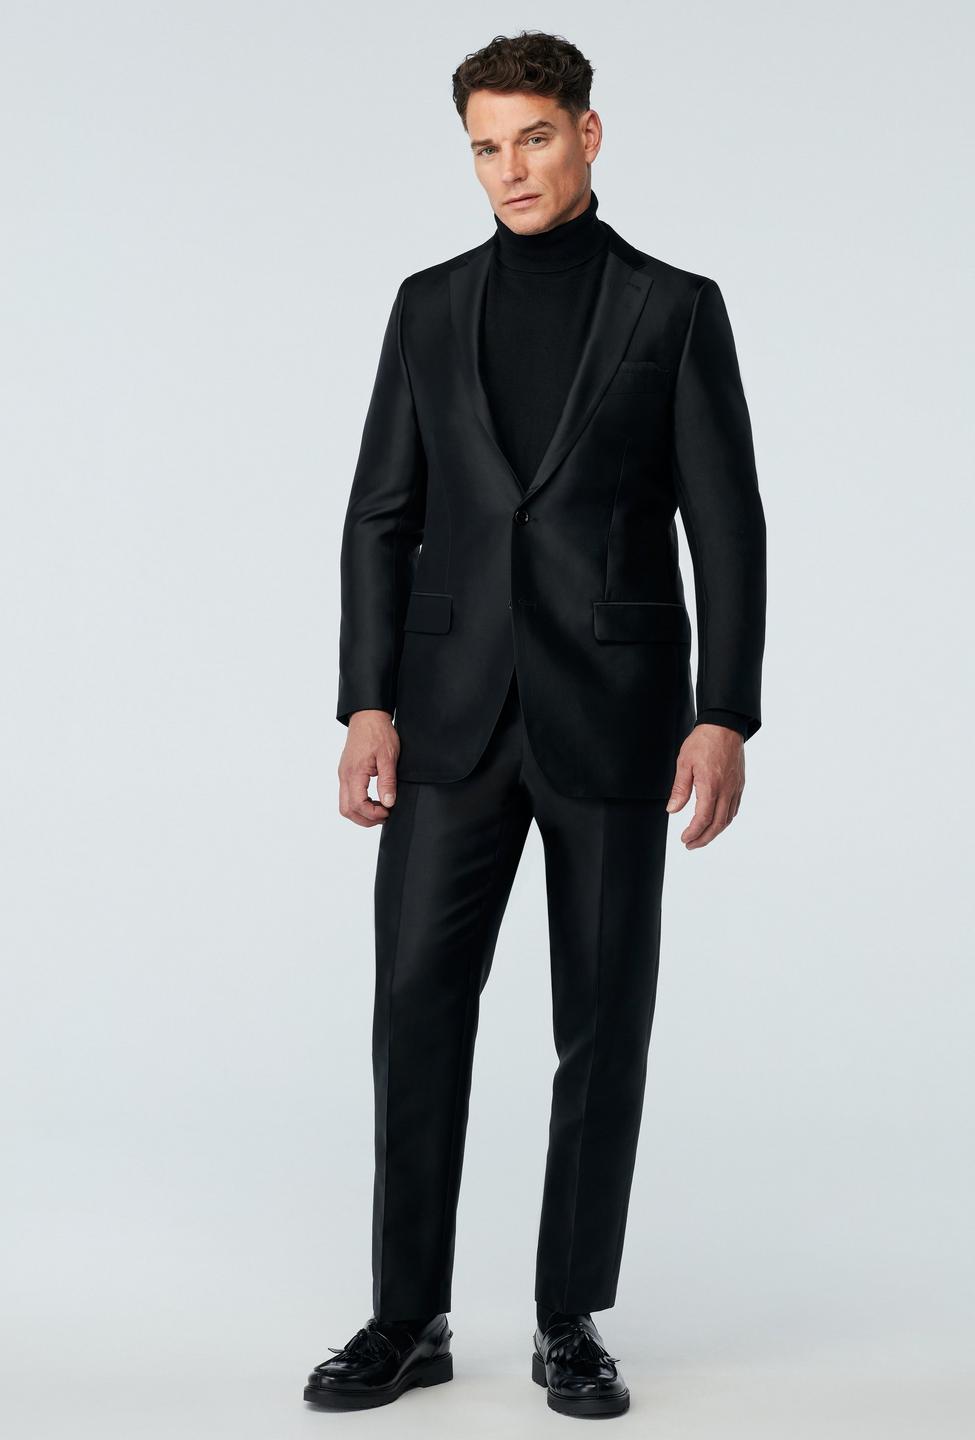 Hythe Silk Wool Black Suit